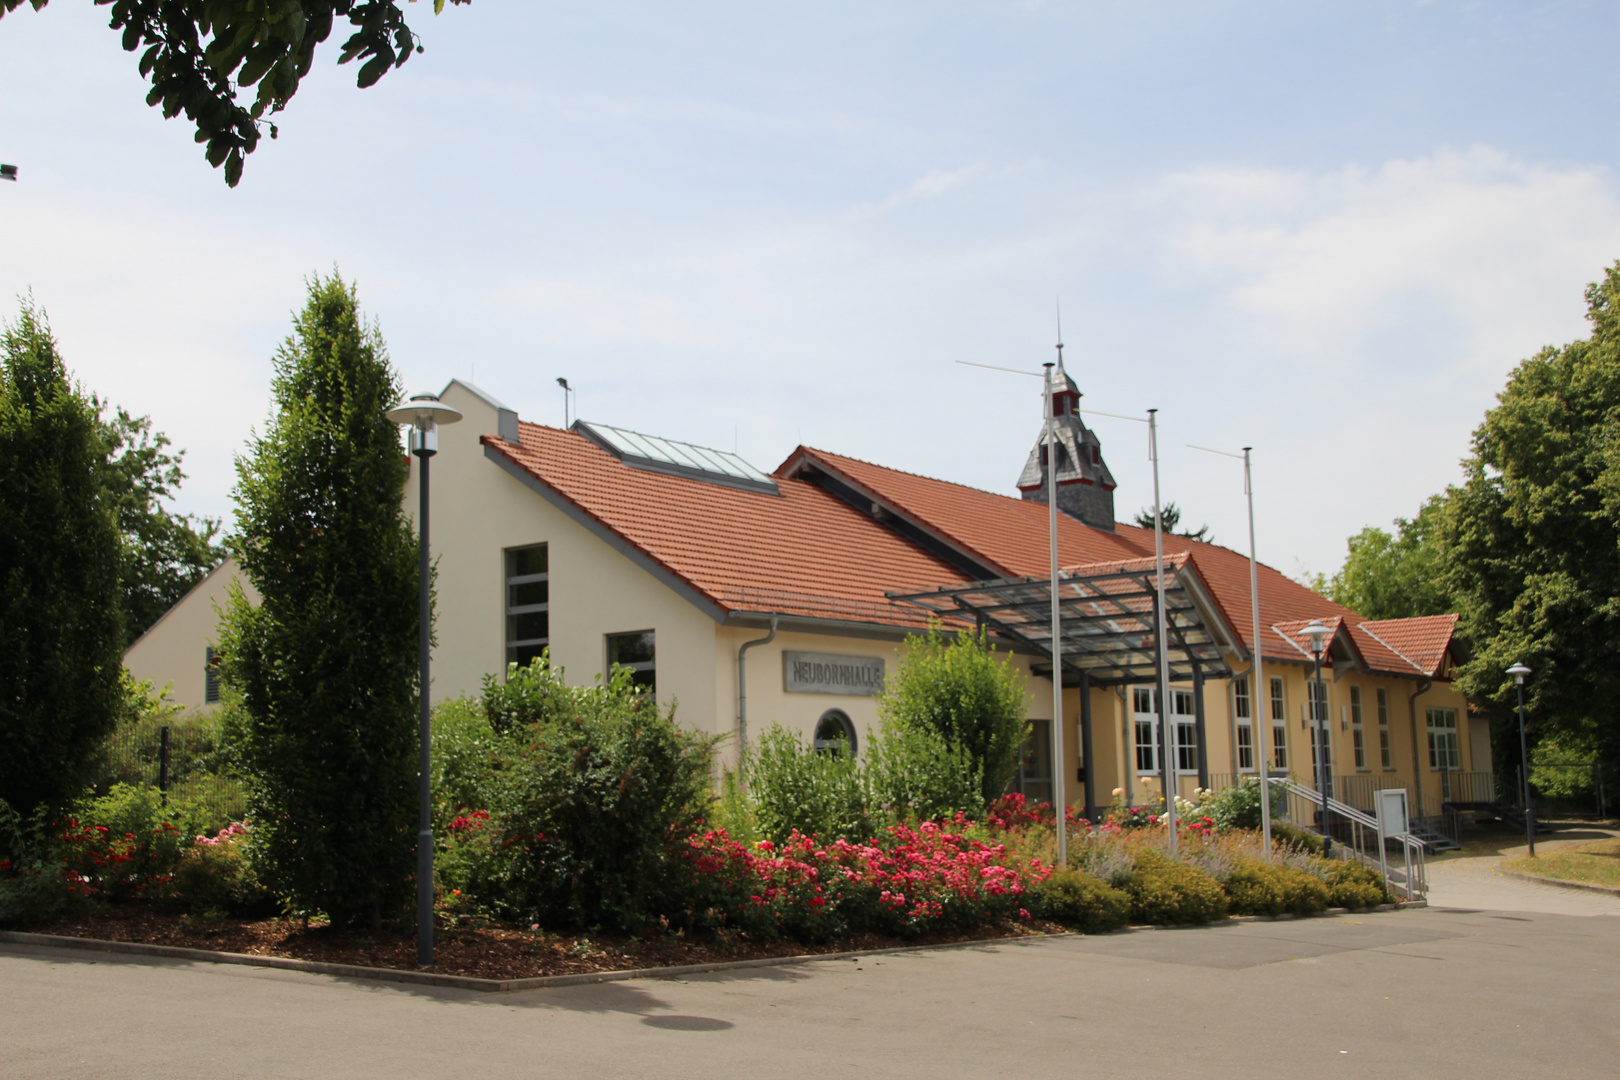 Wörrstadt - Neubornhalle